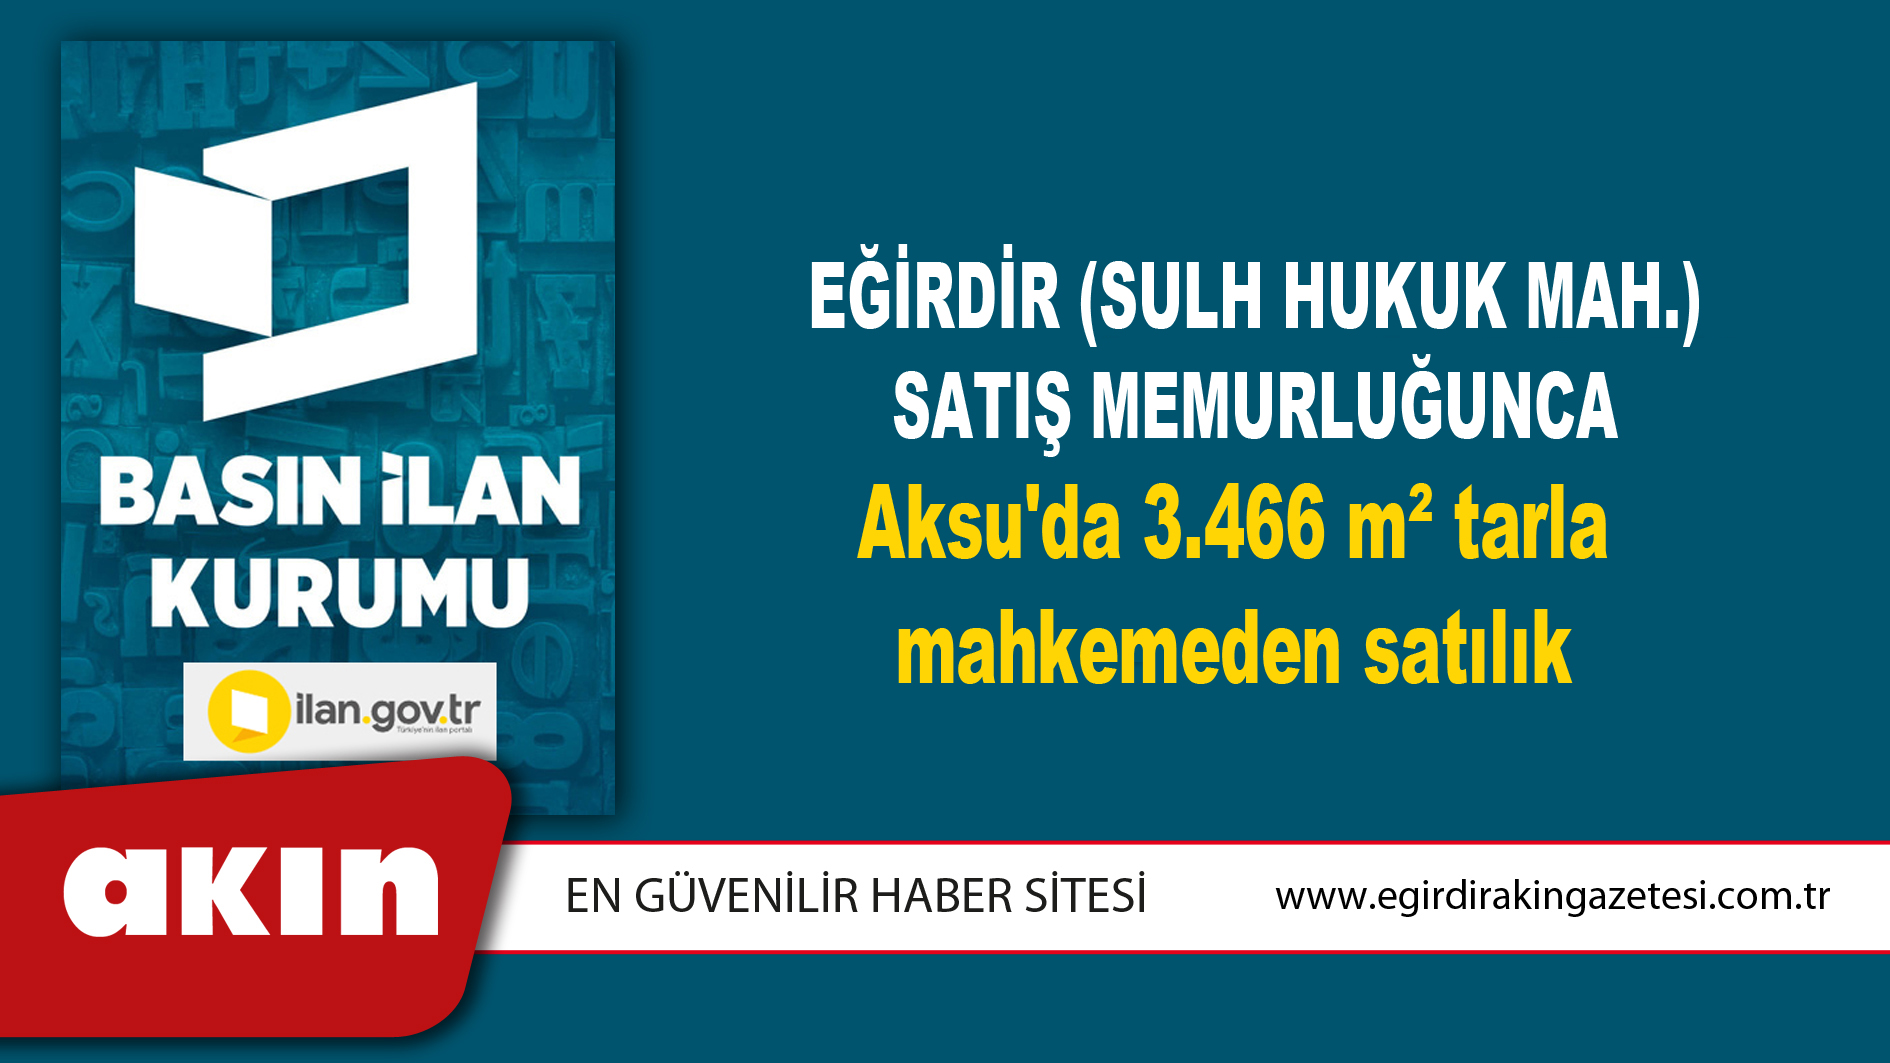 Eğirdir (Sulh Hukuk Mah.) Satış Memurluğunca Aksu'da 3.466 m² tarla mahkemeden satılık